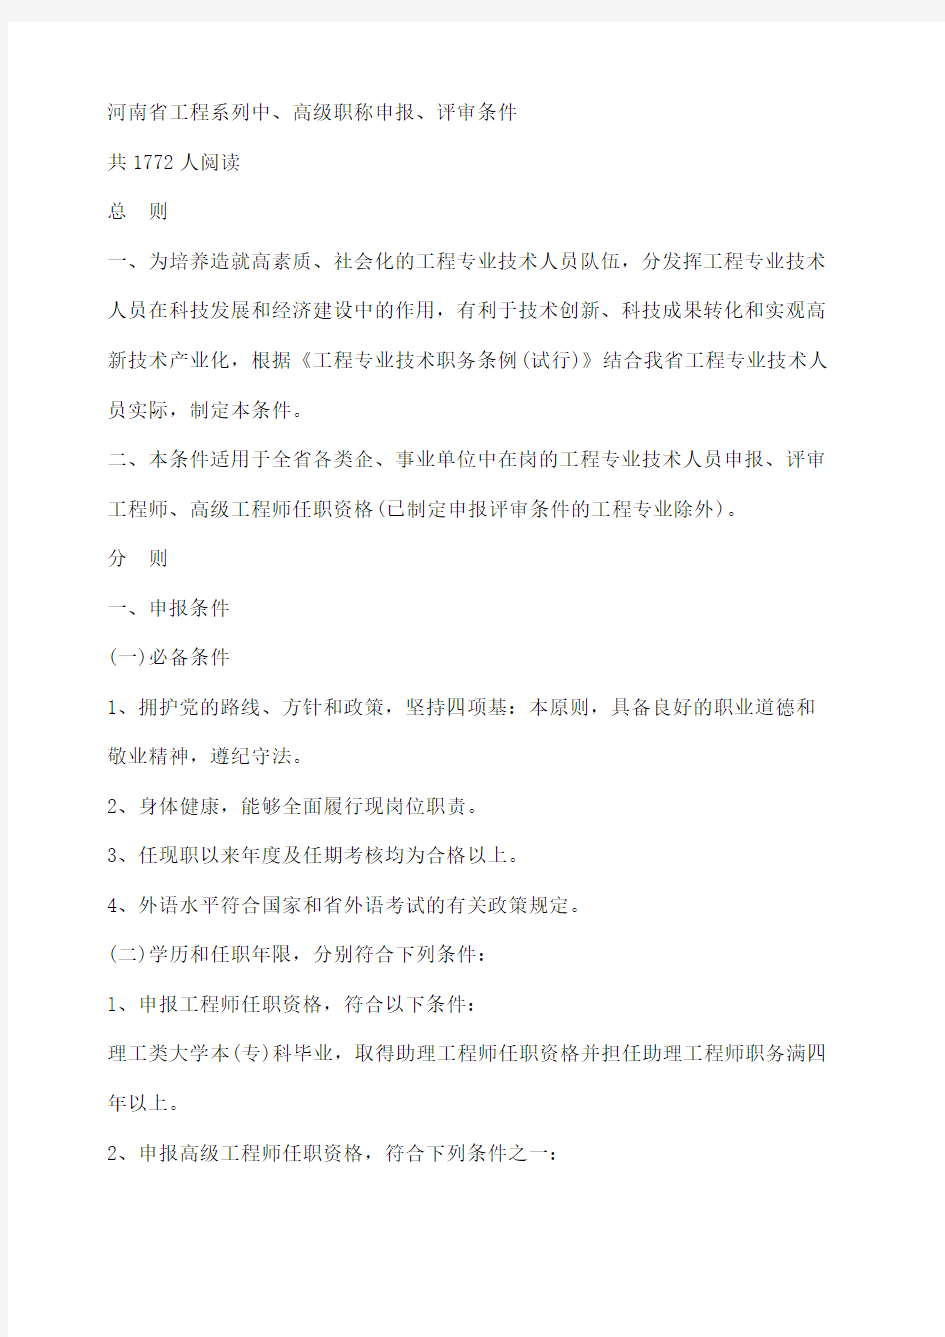 河南省工程系列中高级职称评审条件